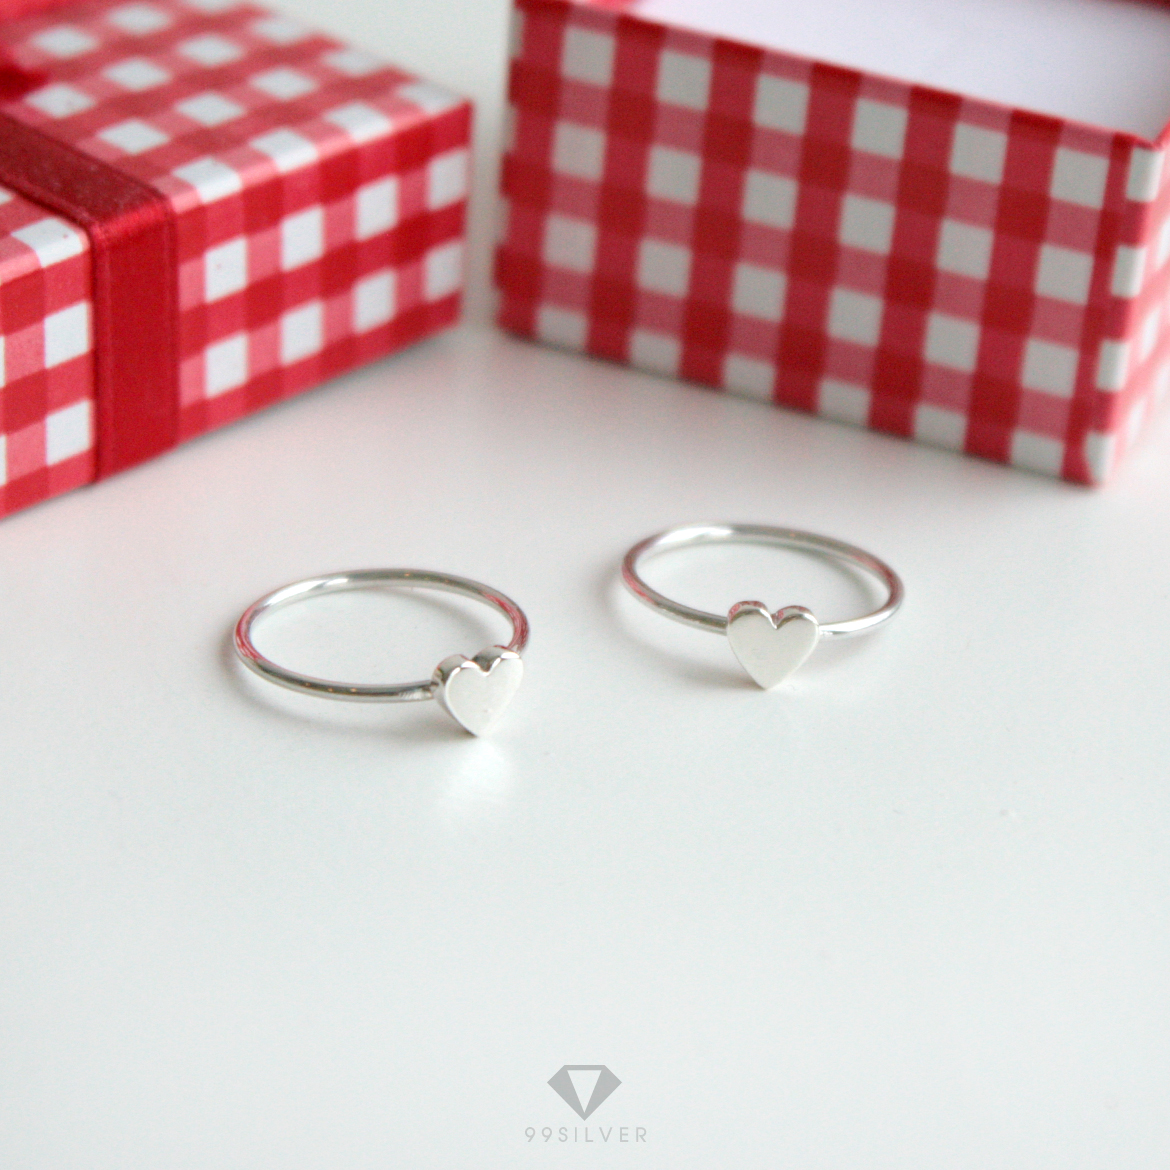 แหวนหัวใจ แบบเล็ก หน้าแหวนสามารถสลักอักษรได้ ก้านเล็กพอดีมือใส่สบาย